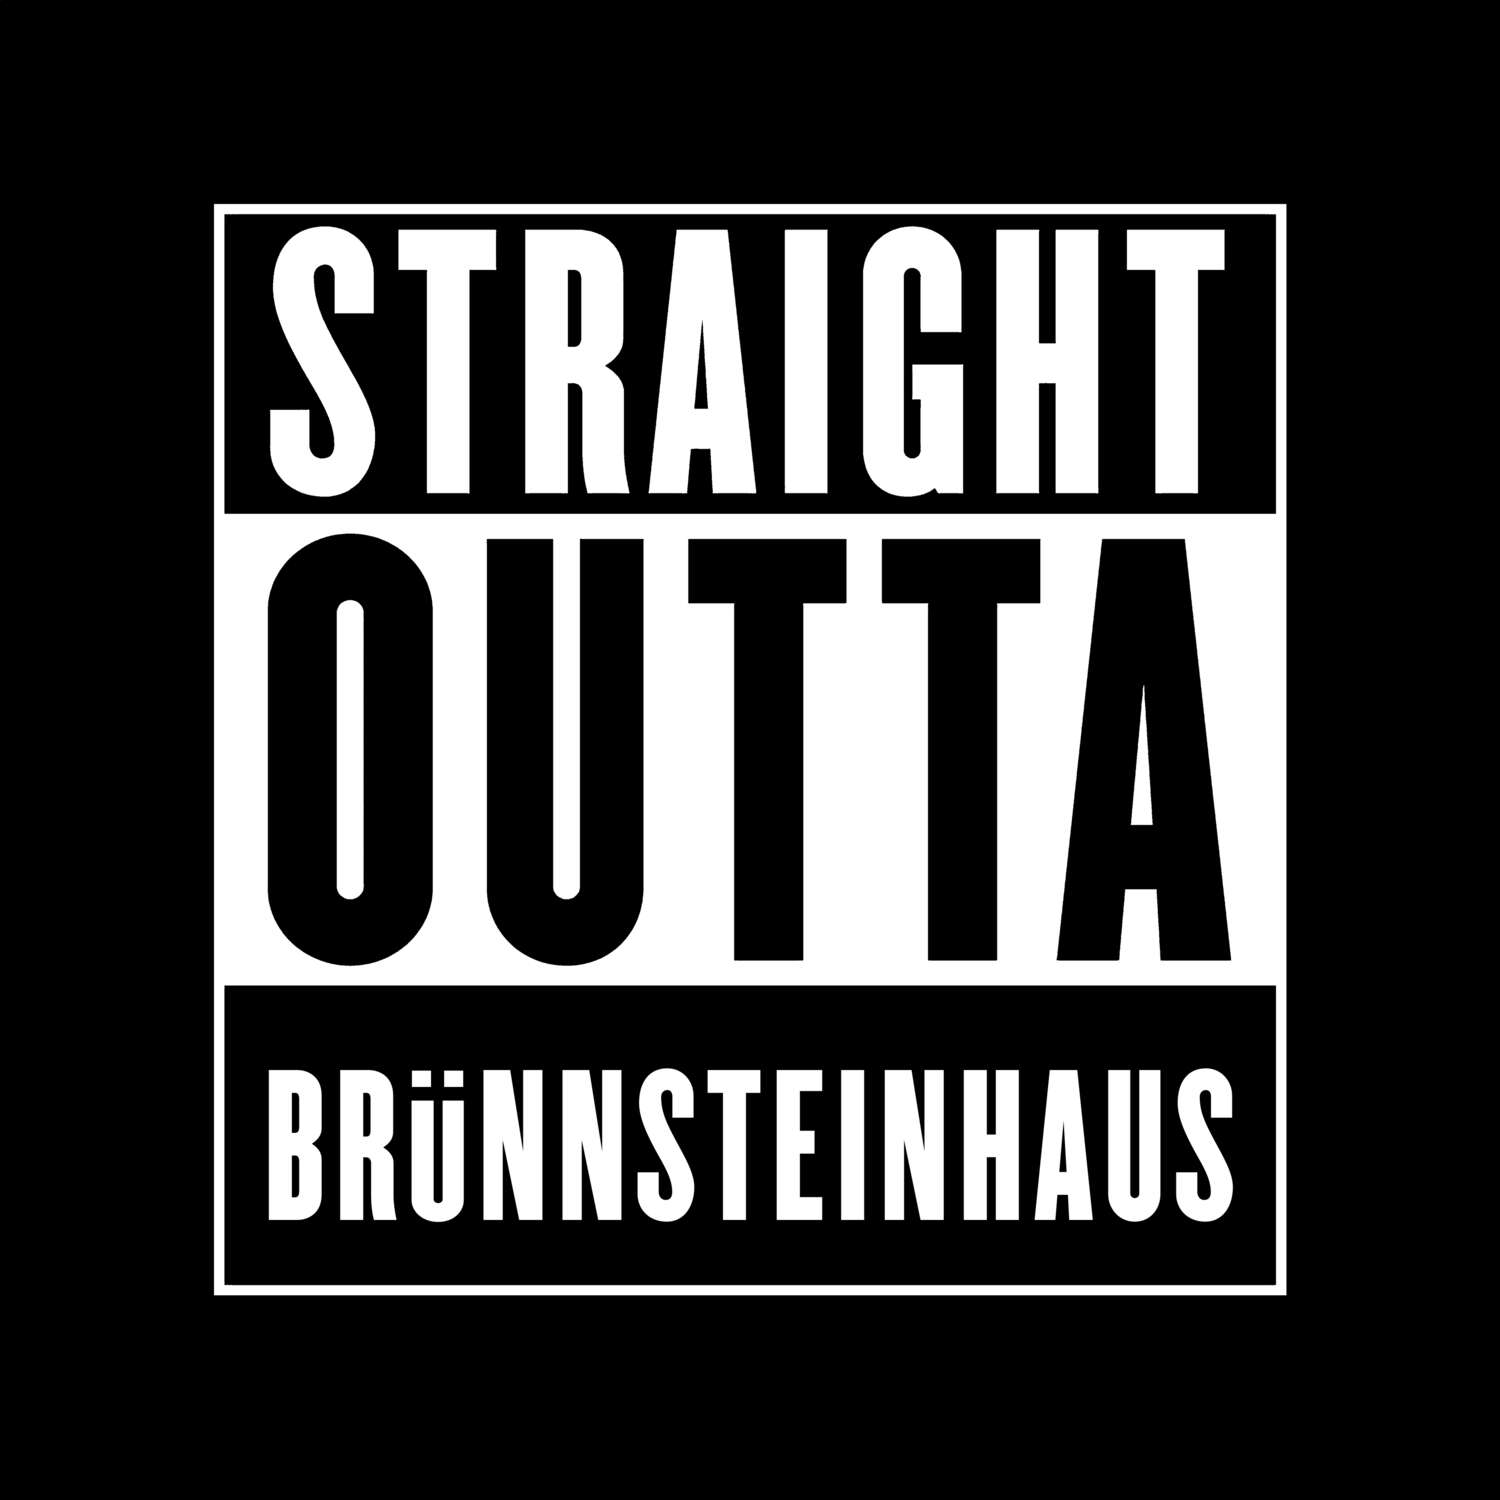 Brünnsteinhaus T-Shirt »Straight Outta«